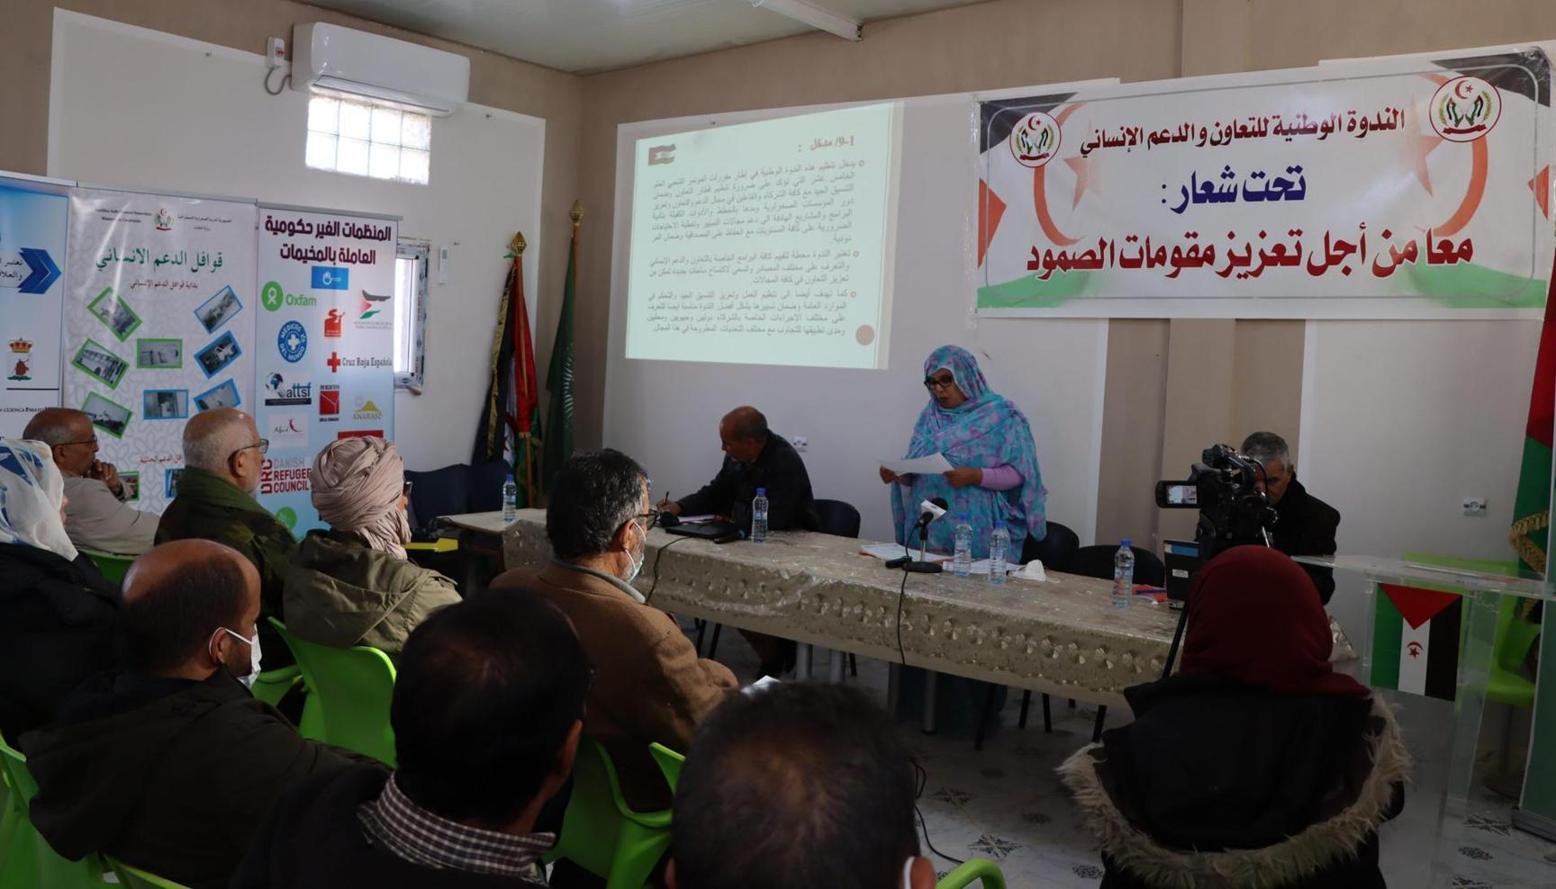 الرئيس الصحراوي يشرف على انطلاق أشغال الندوة الوطنية للتعاون والدعم الإنساني